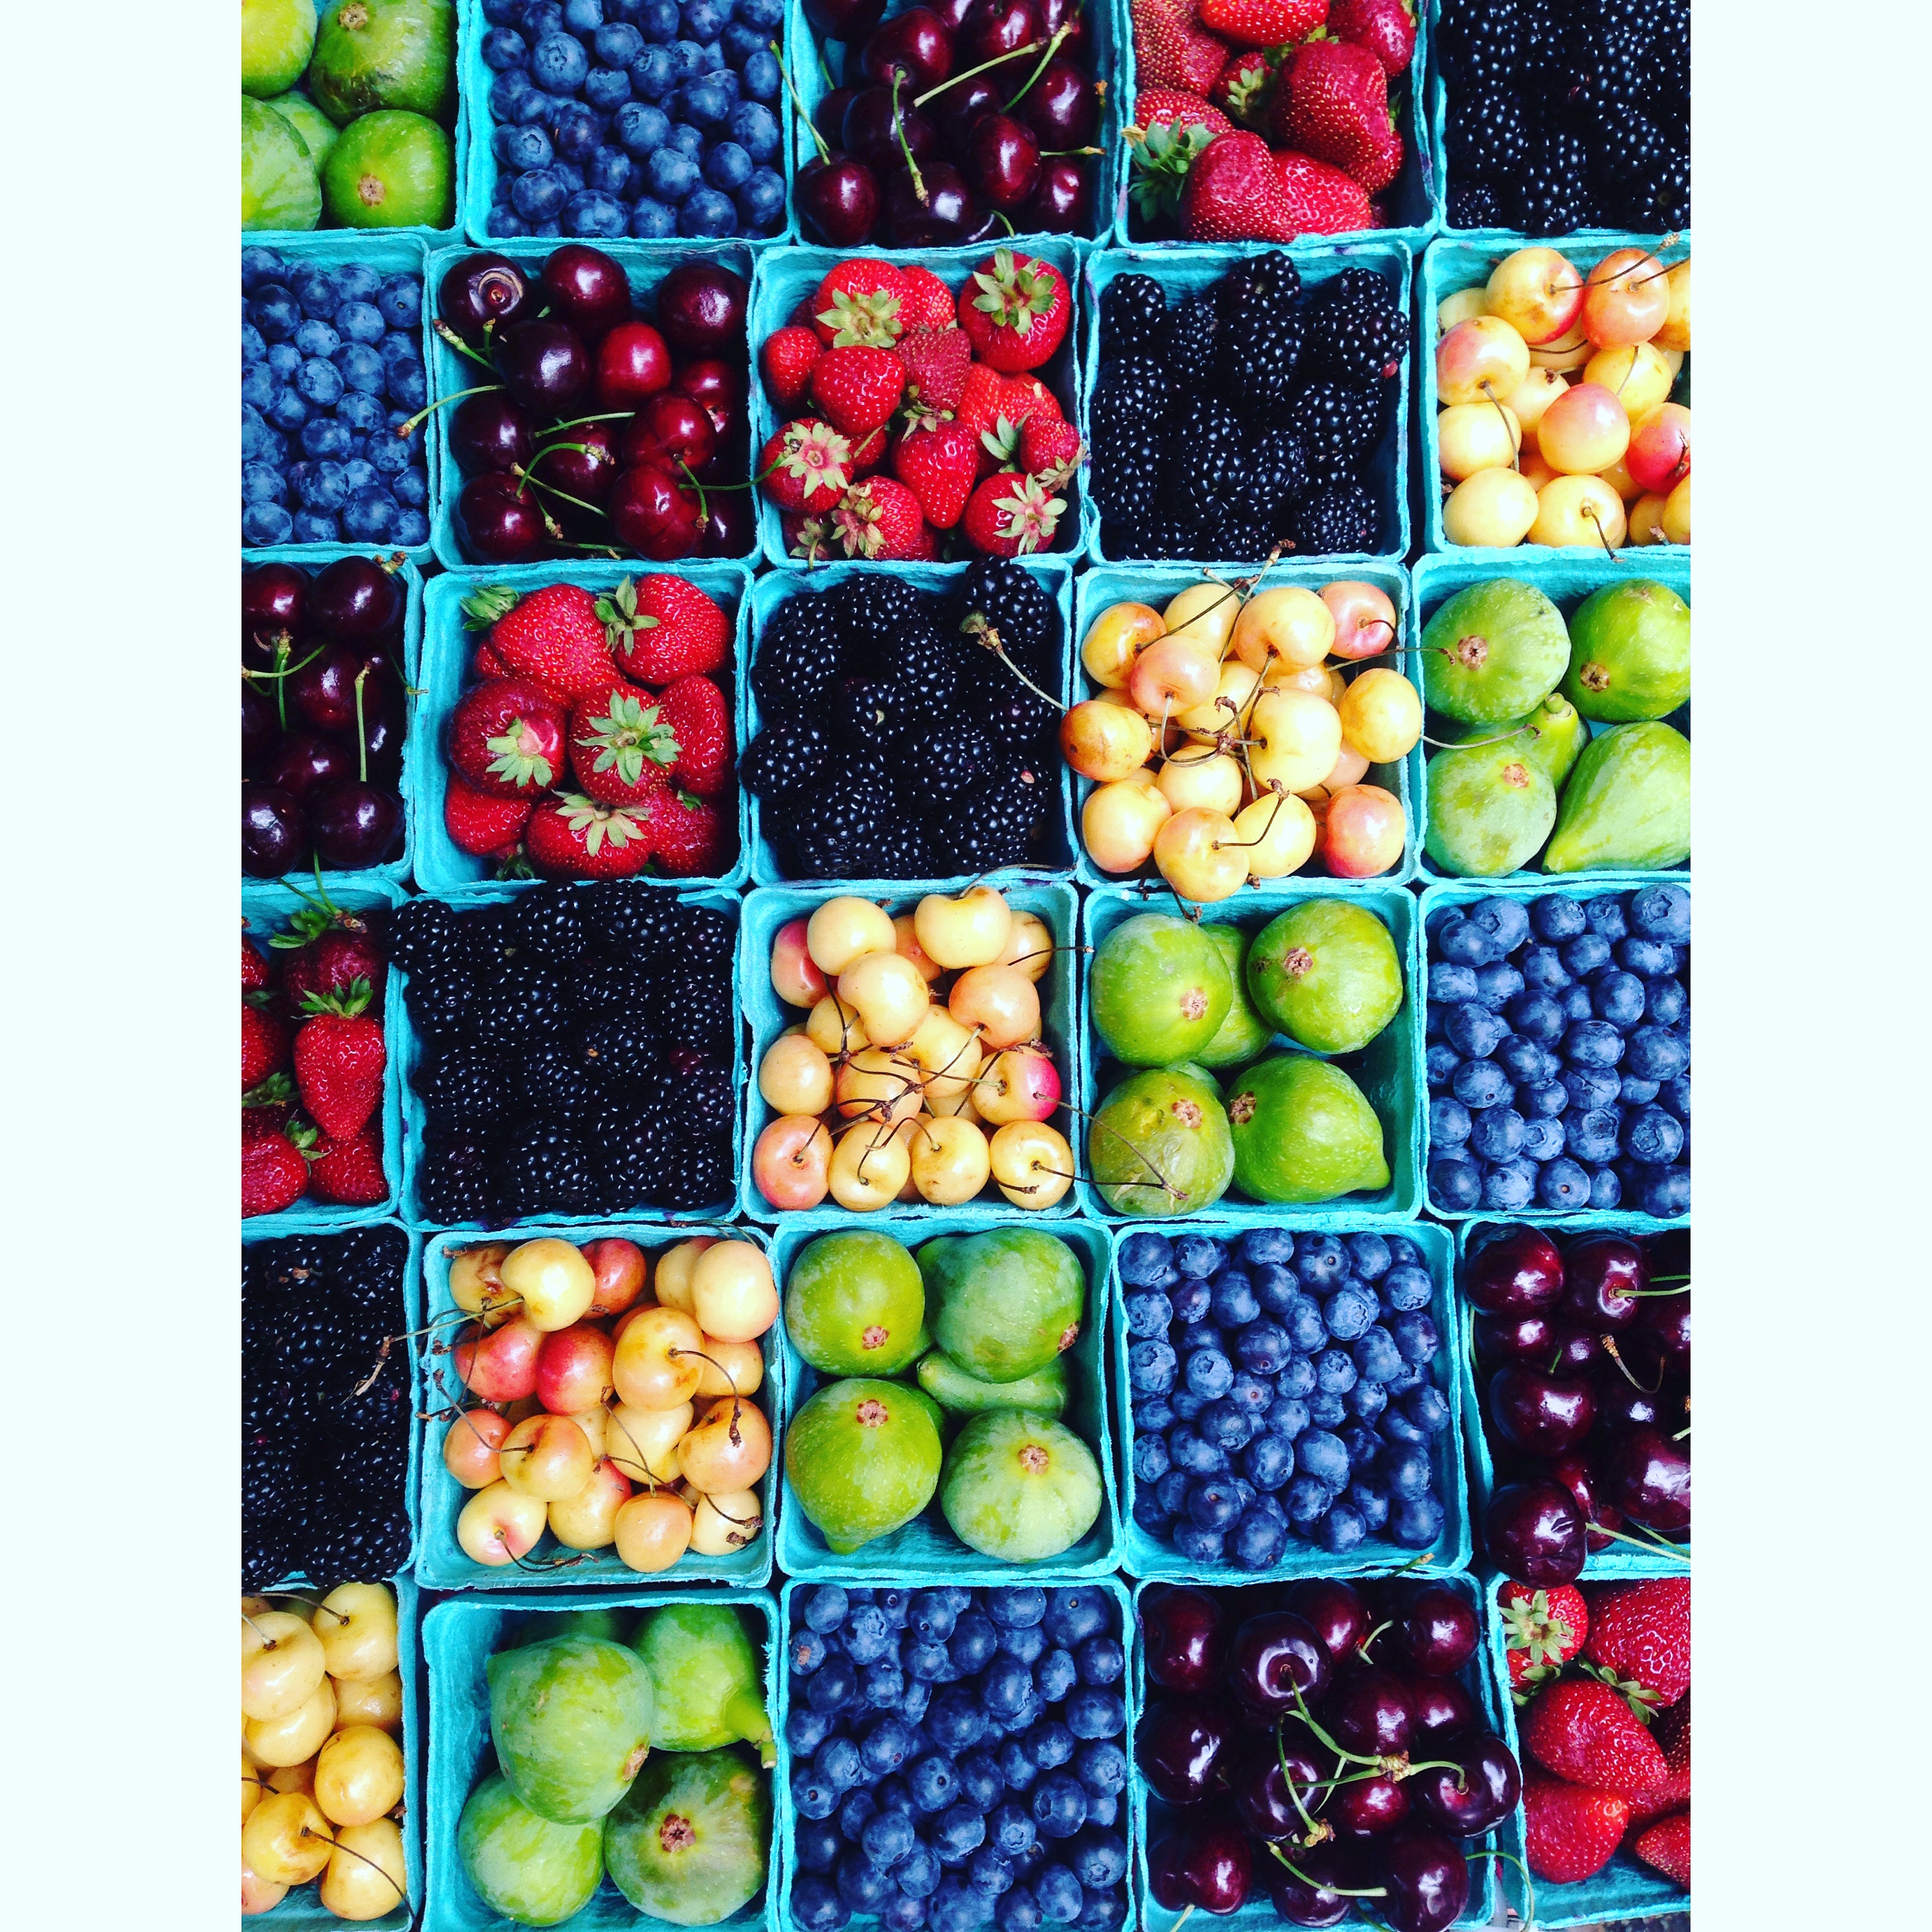 Baskets full of fruit